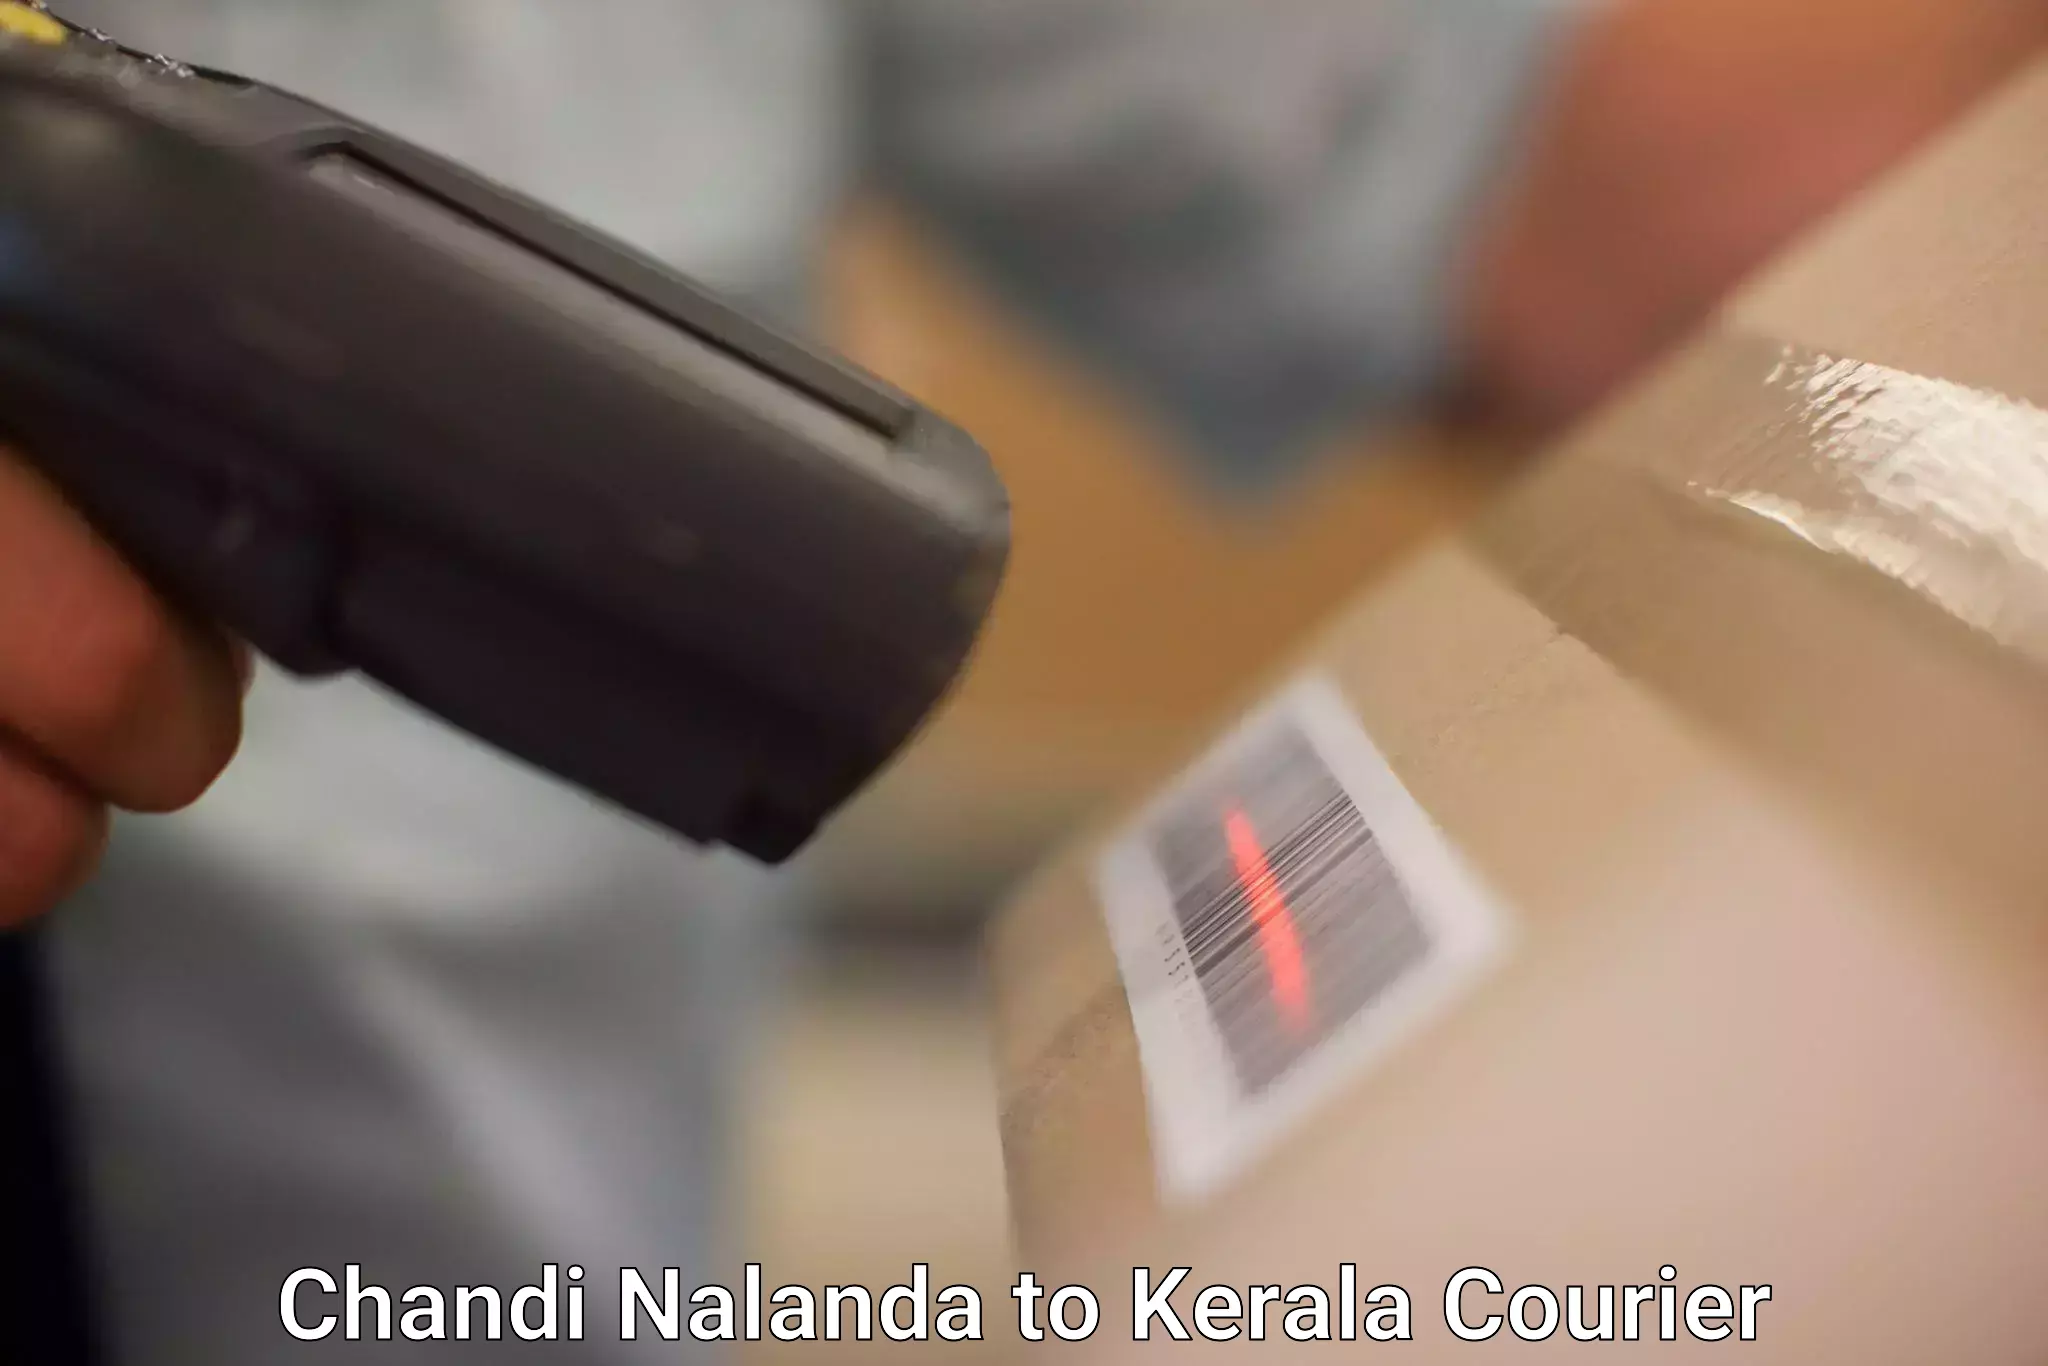 Bulk courier orders Chandi Nalanda to Kerala